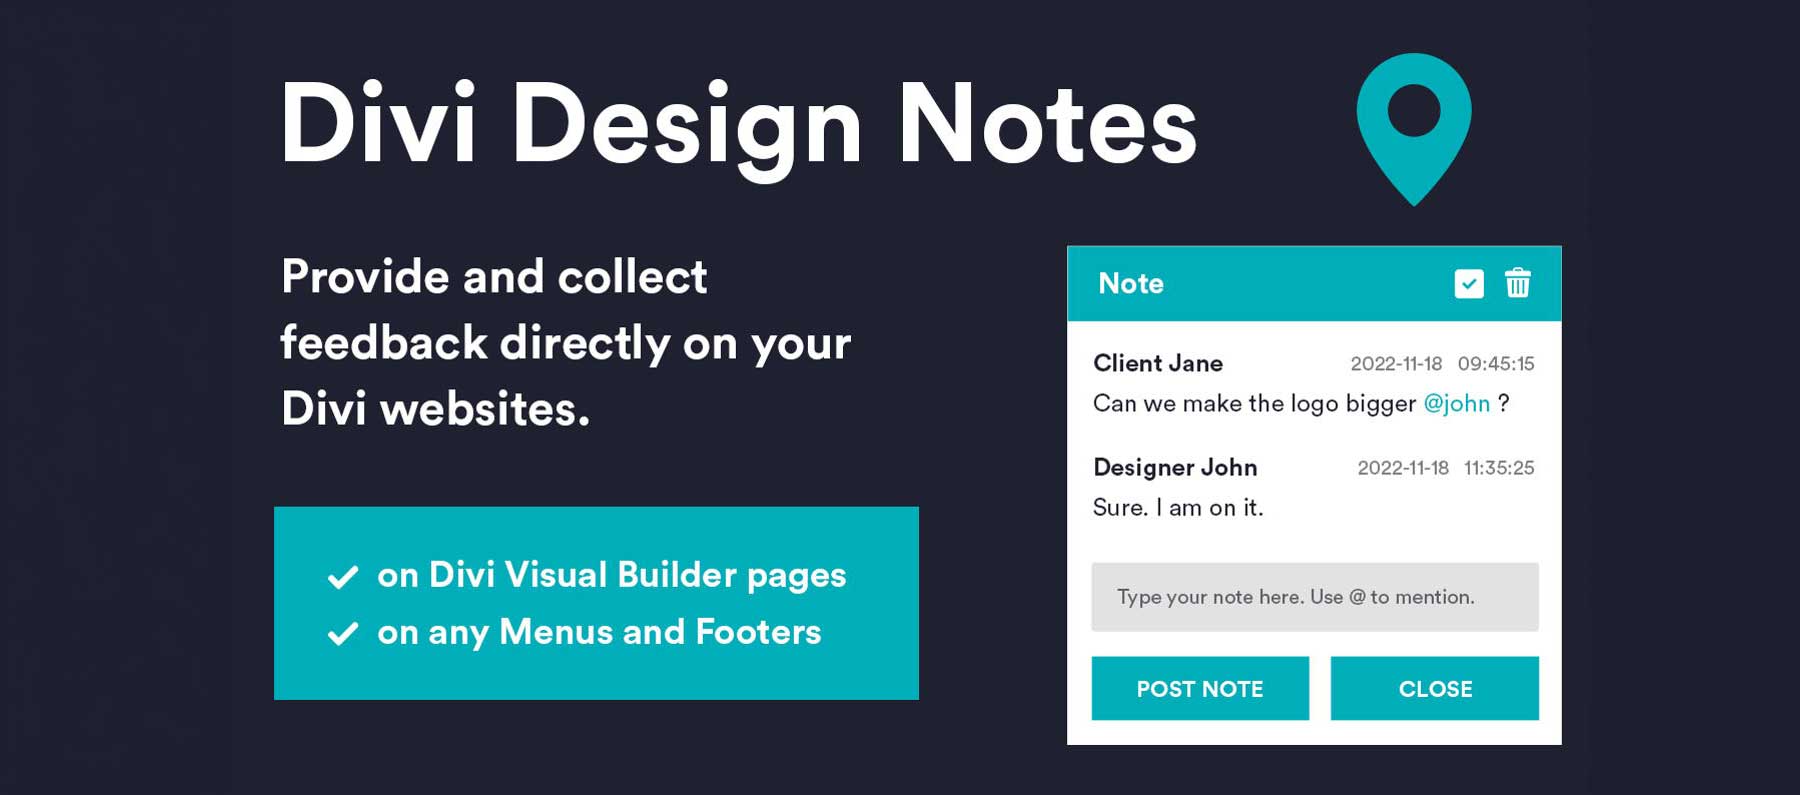 Divi Design Notes